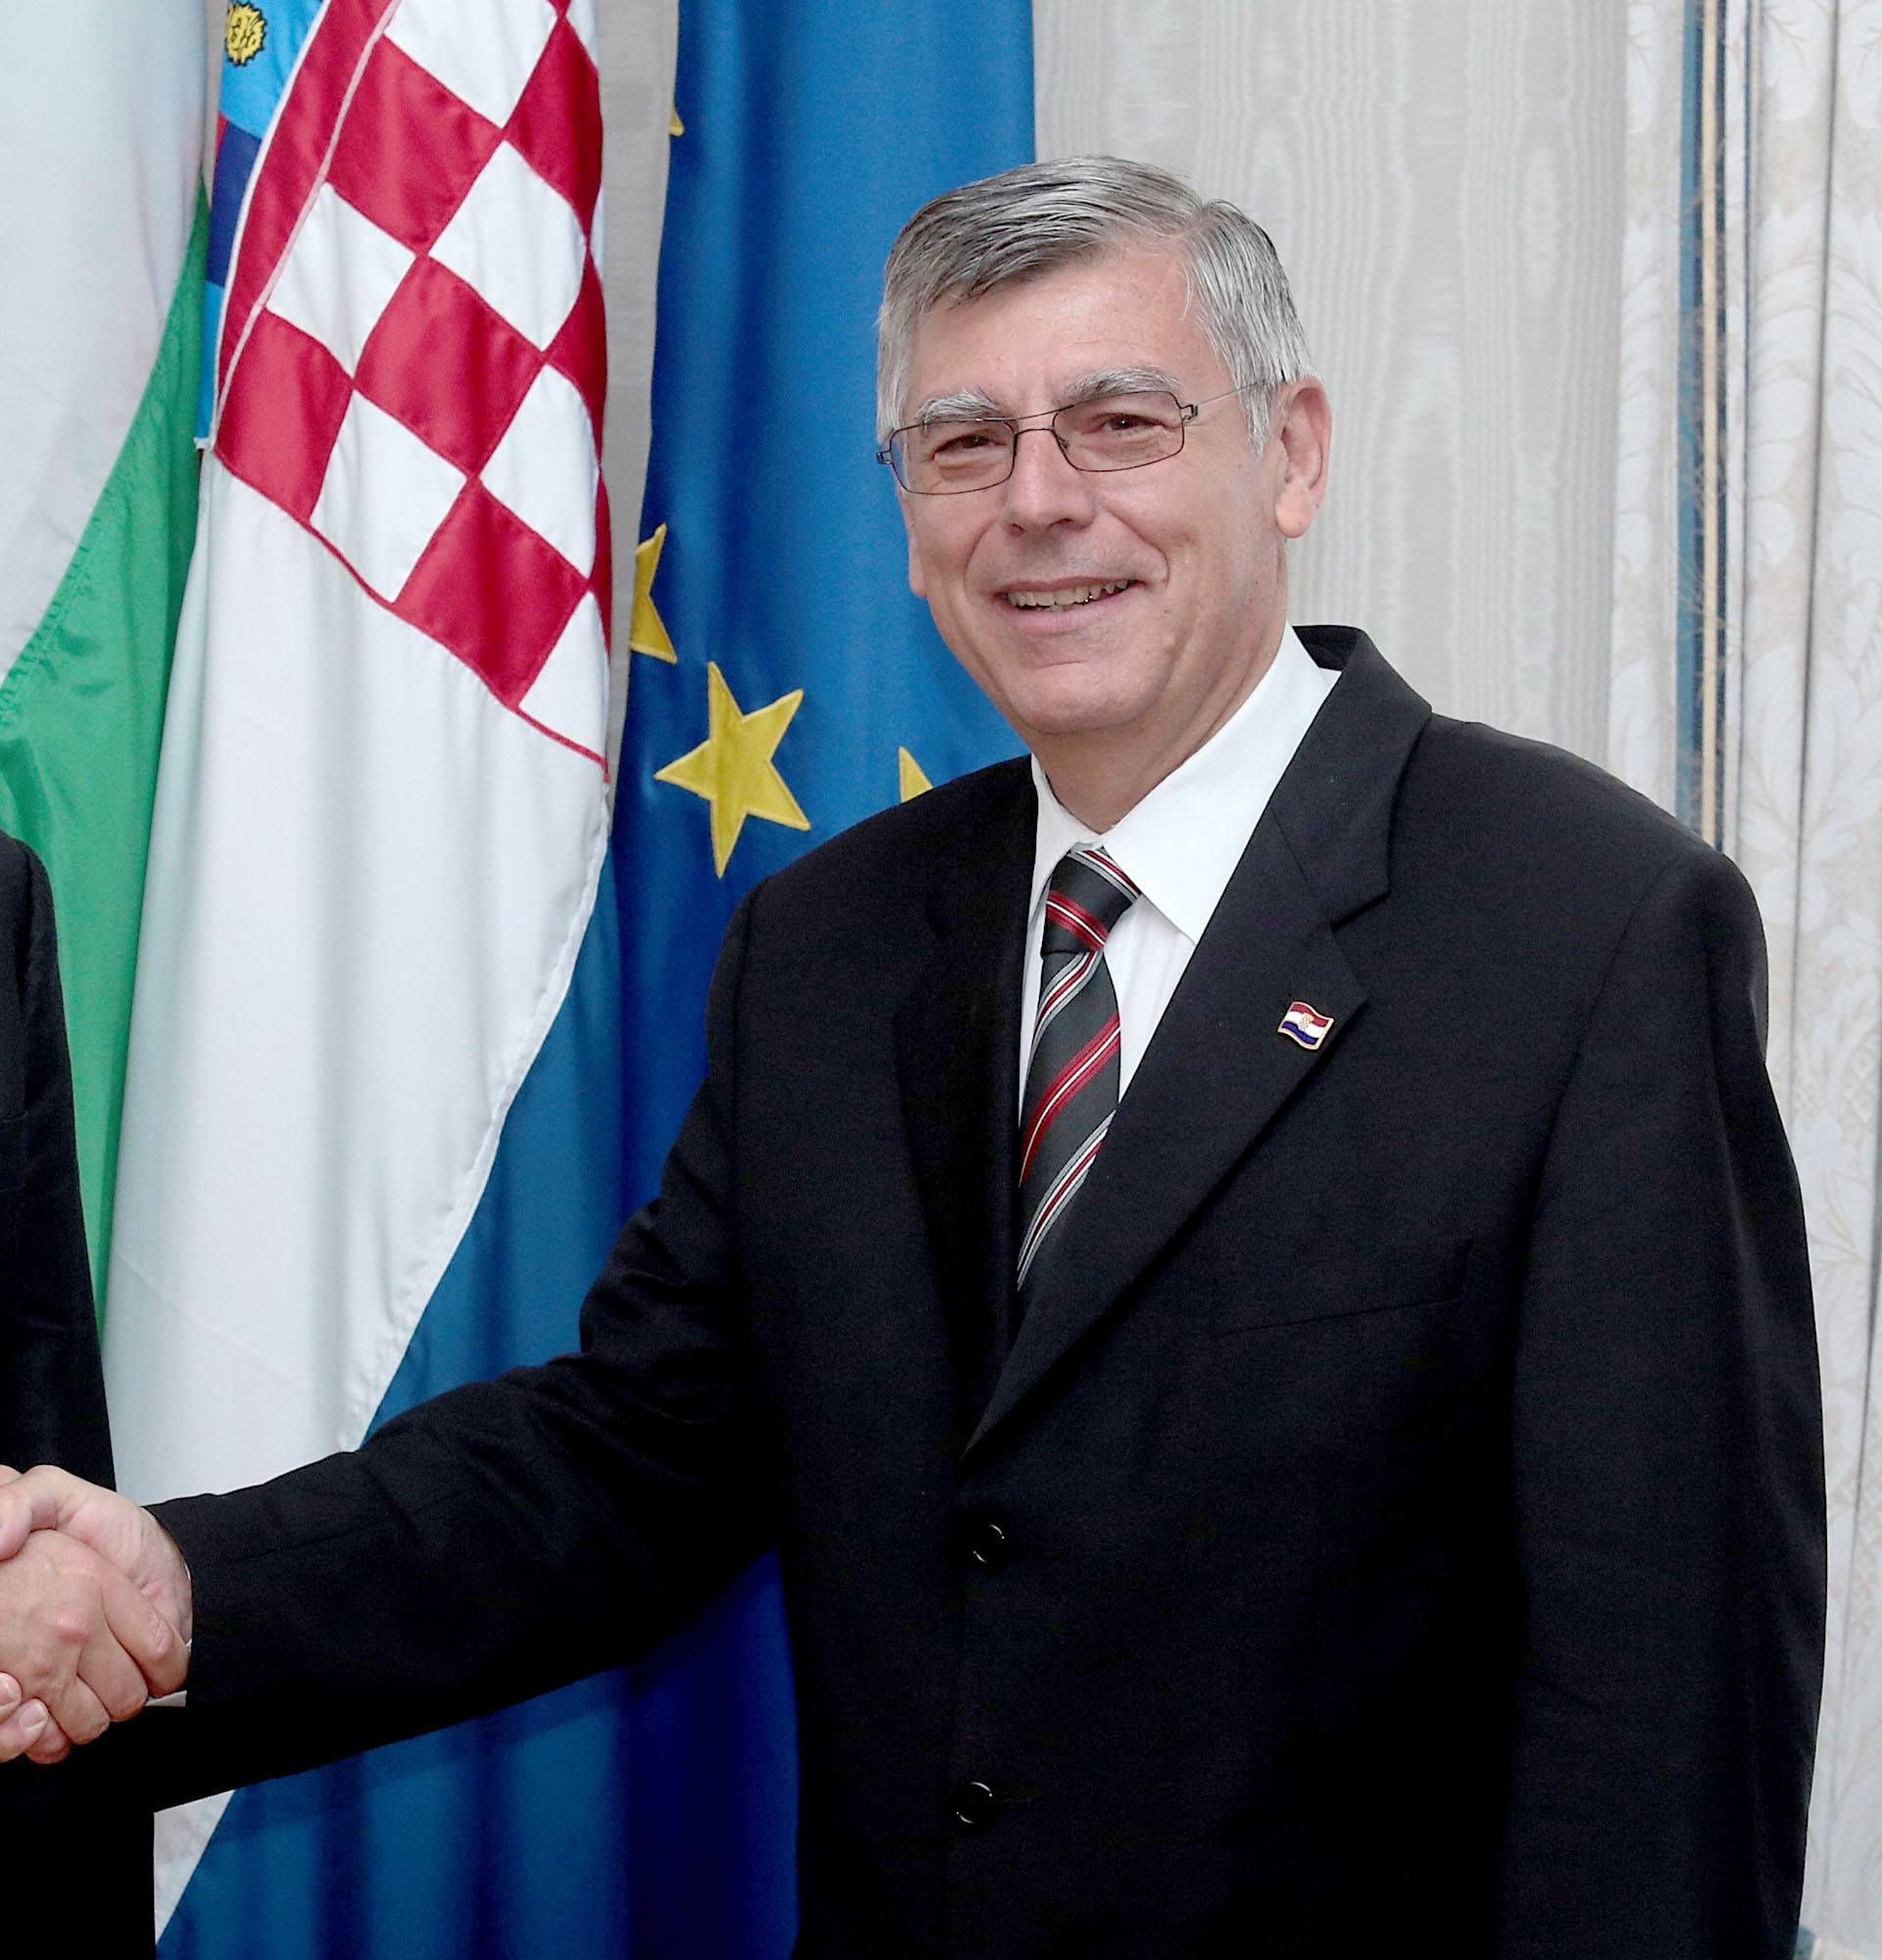 Mađarska i RH za civilizirano rješavanje otvorenih pitanja